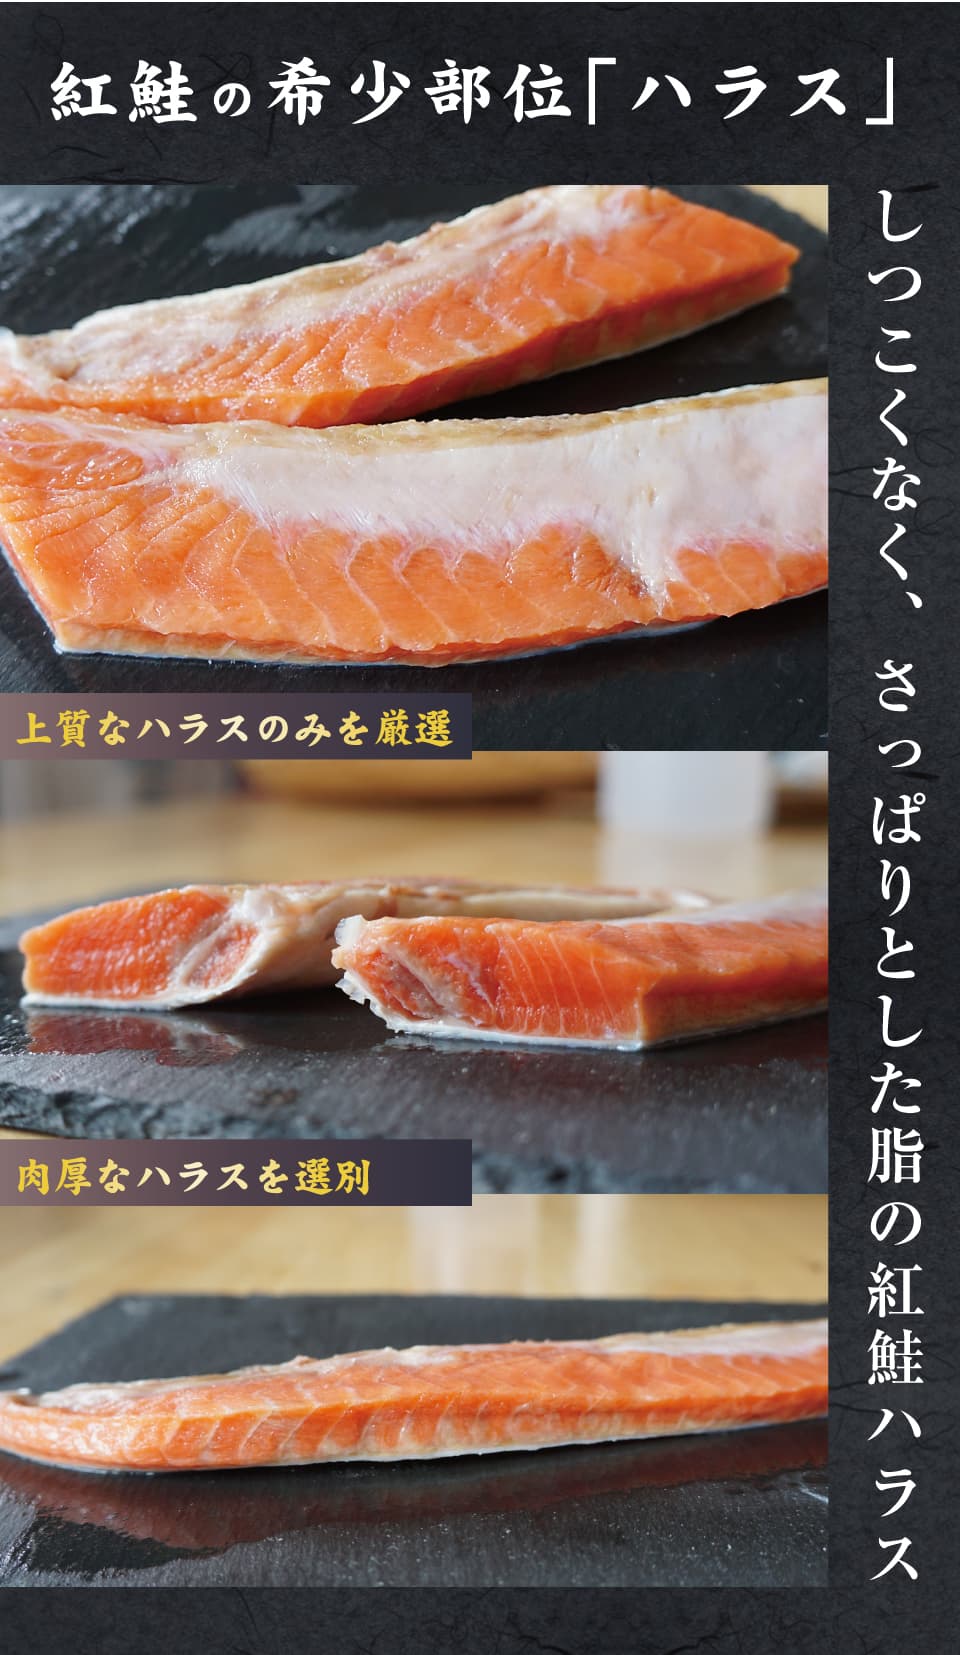 紅鮭 ハラス 鮭 500g 紅鮭だから美味しさ格別 シャケ ハラス しつこくない 美味しい脂 紅鮭ハラス :harasu-500:ま印水産 - 通販  - Yahoo!ショッピング